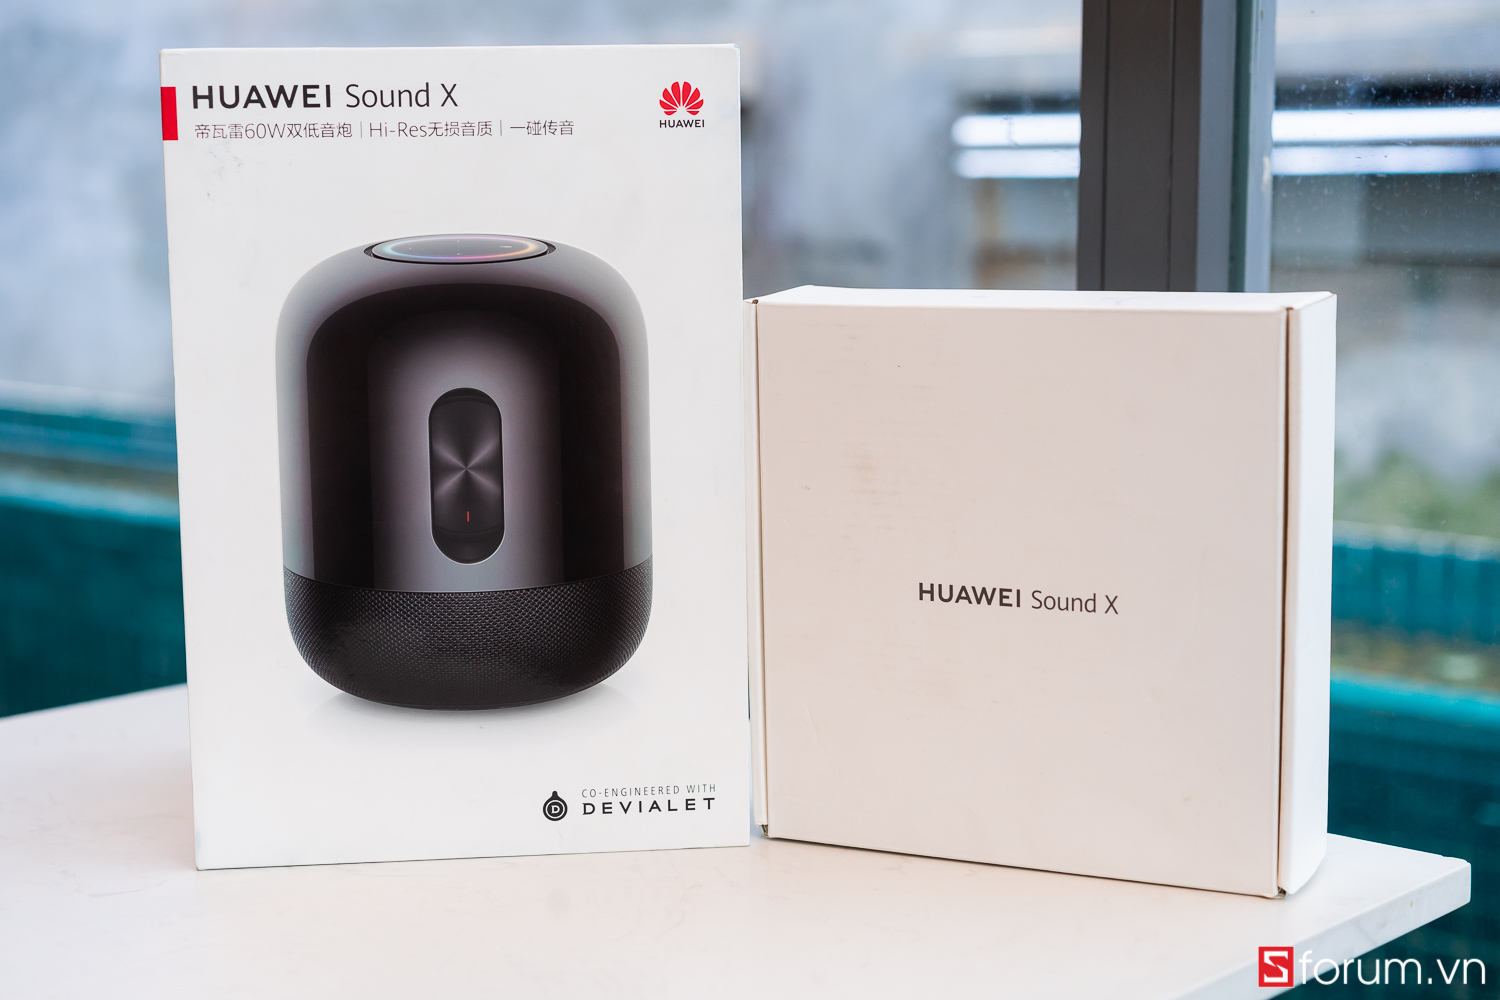 Sforum - Trang thông tin công nghệ mới nhất Huawei-Sound-X-20 Trên tay Huawei Sound X: Loa thông minh đầu tiên đạt chứng nhận Hi-Res, âm trầm đẳng cấp, thiết kế tinh tế, bluetooth 5.1 độc nhất, giá 6,990,000 VNĐ 